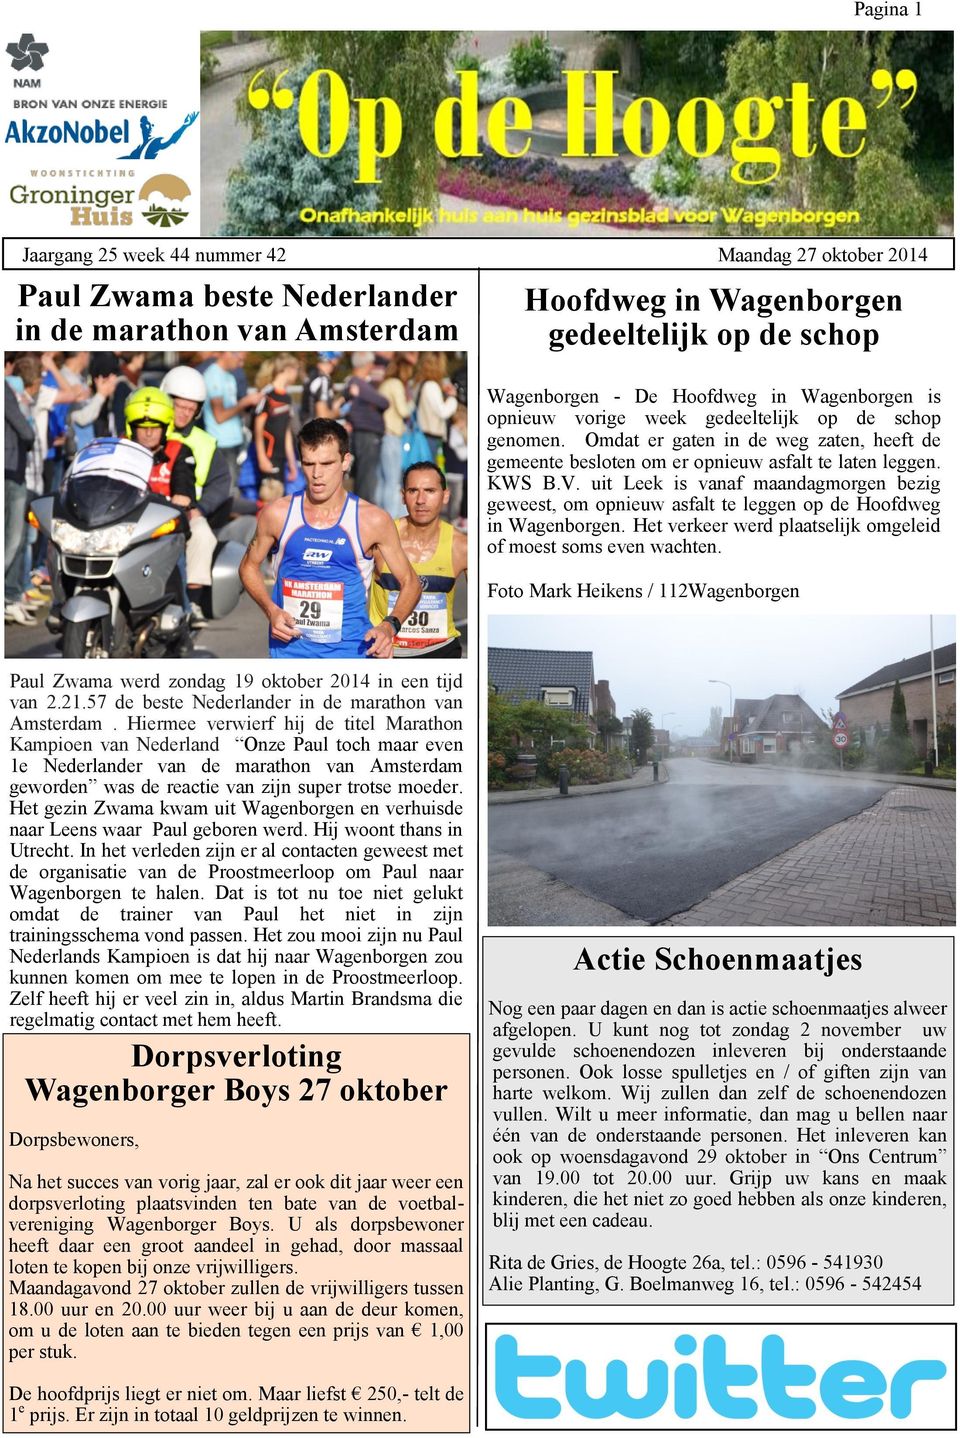 uit Leek is vanaf maandagmorgen bezig geweest, om opnieuw asfalt te leggen op de Hoofdweg in Wagenborgen. Het verkeer werd plaatselijk omgeleid of moest soms even wachten.